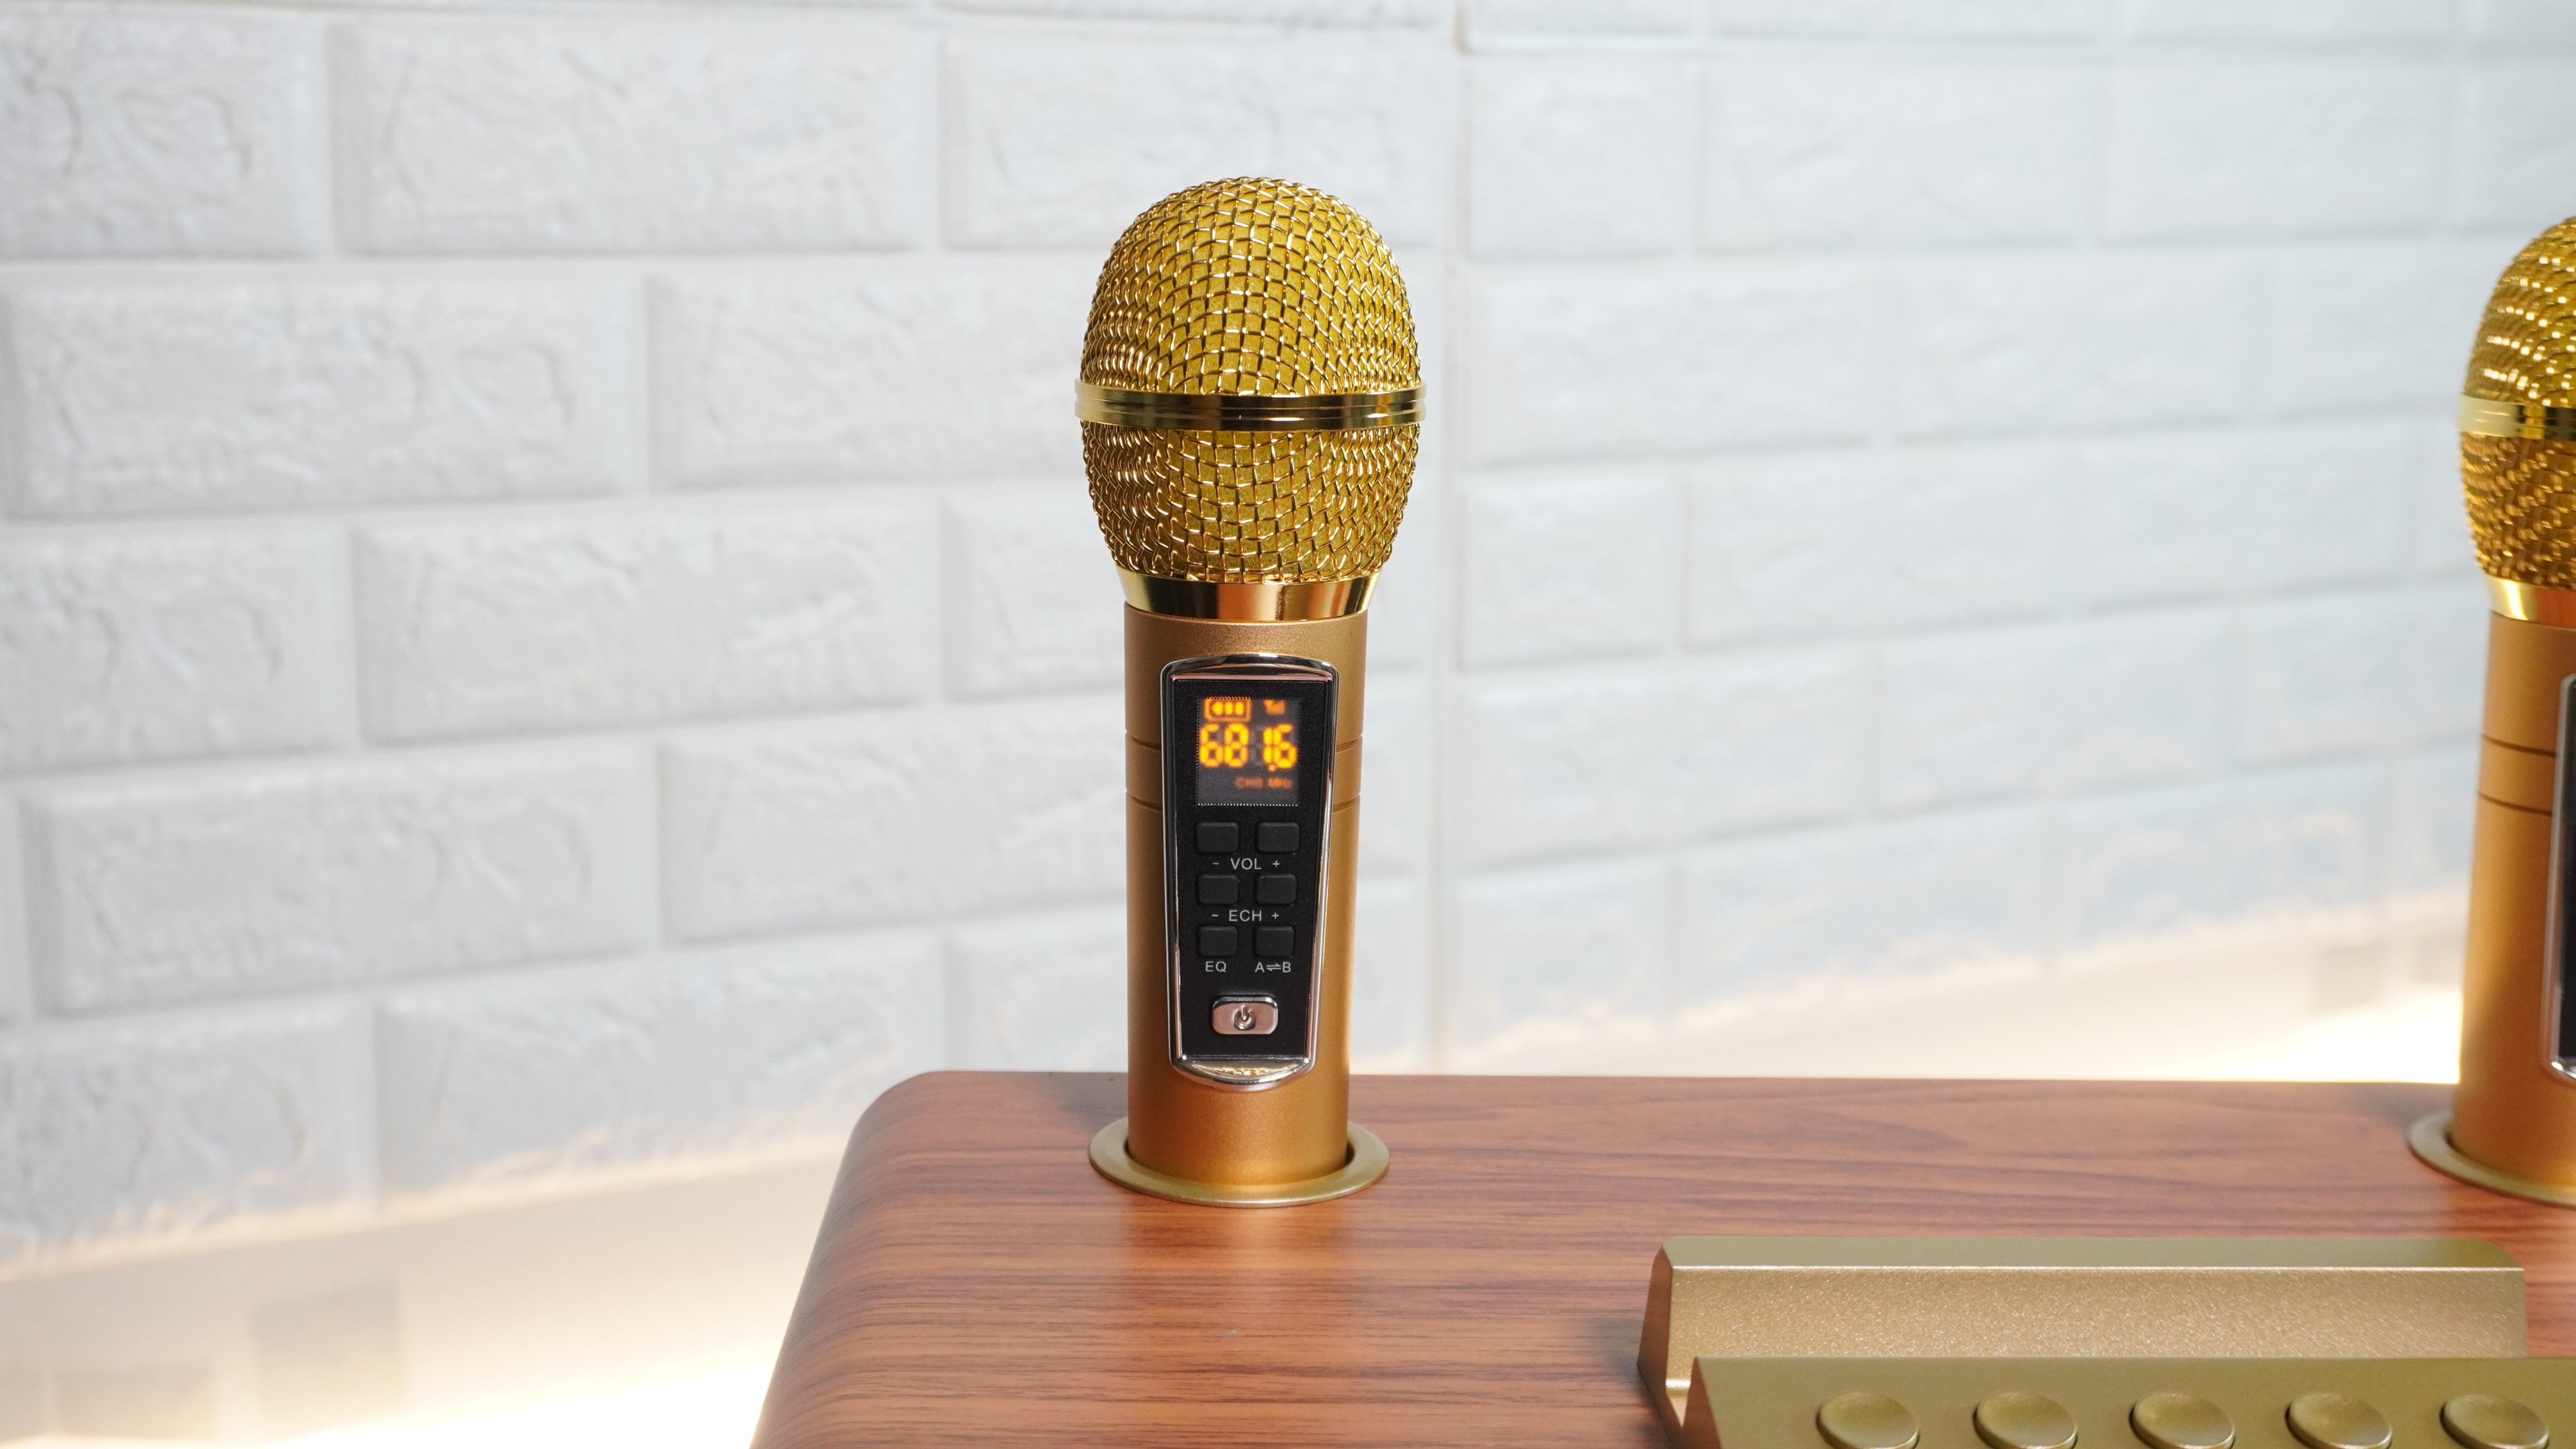 Loa karaoke bluetooth KEI K08 - Tặng kèm 2 micro không dây có màn hình LCD - Sạc pin cho micro ngay trên loa - Chỉnh bass treble echo trên micro – Đầy đủ cổng kết nối USB, AUX, TF card - Loa xách tay du lịch cực chất